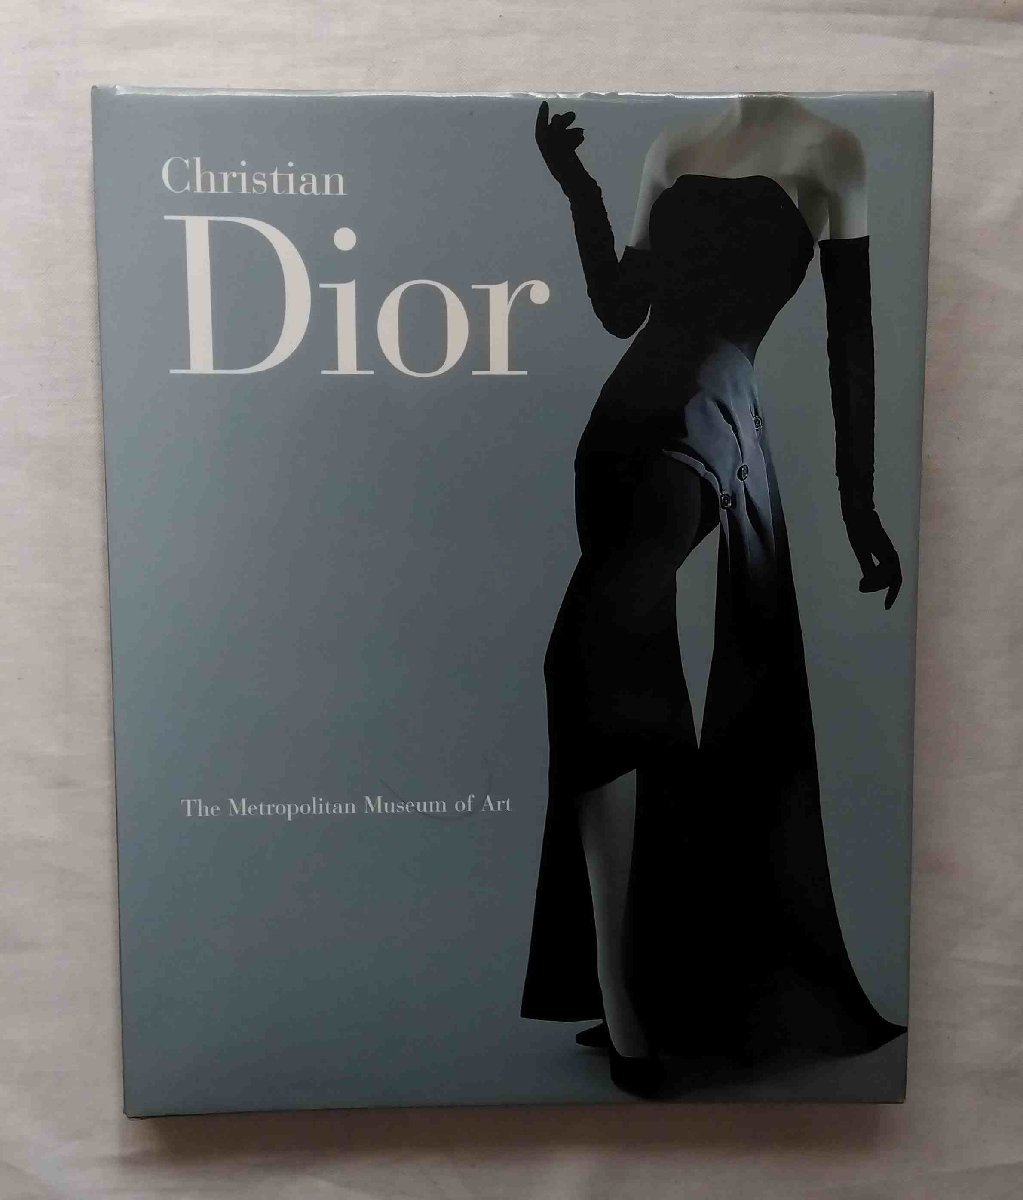 クリスチャン・ ディオール オートクチュール・ドレス 洋書写真集 Christian Dior The Metropolitan Museum of Art ニュールック 刺繍